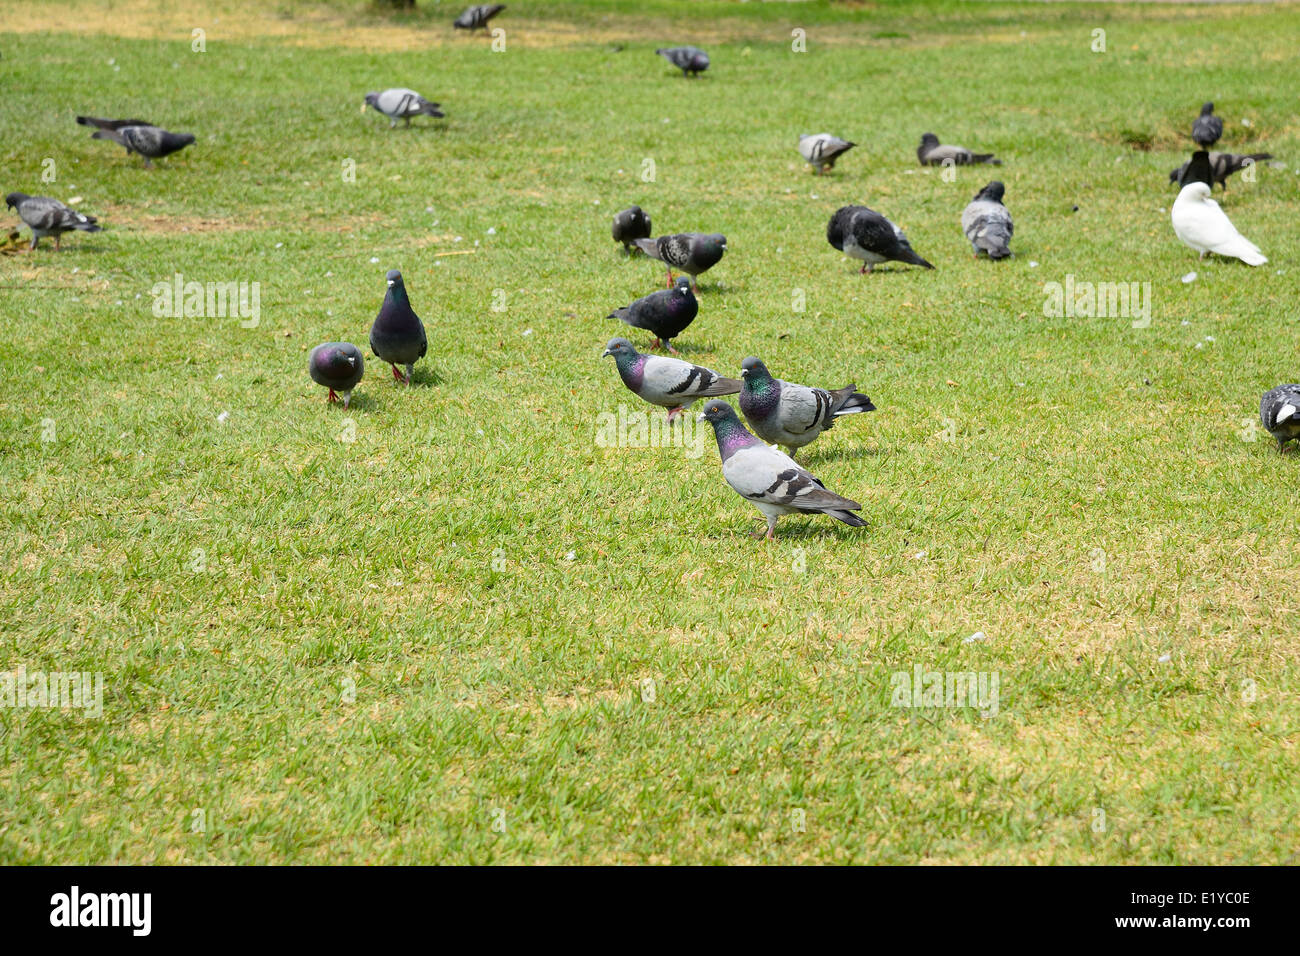 Beaucoup de pigeons sur une pelouse verte Banque D'Images